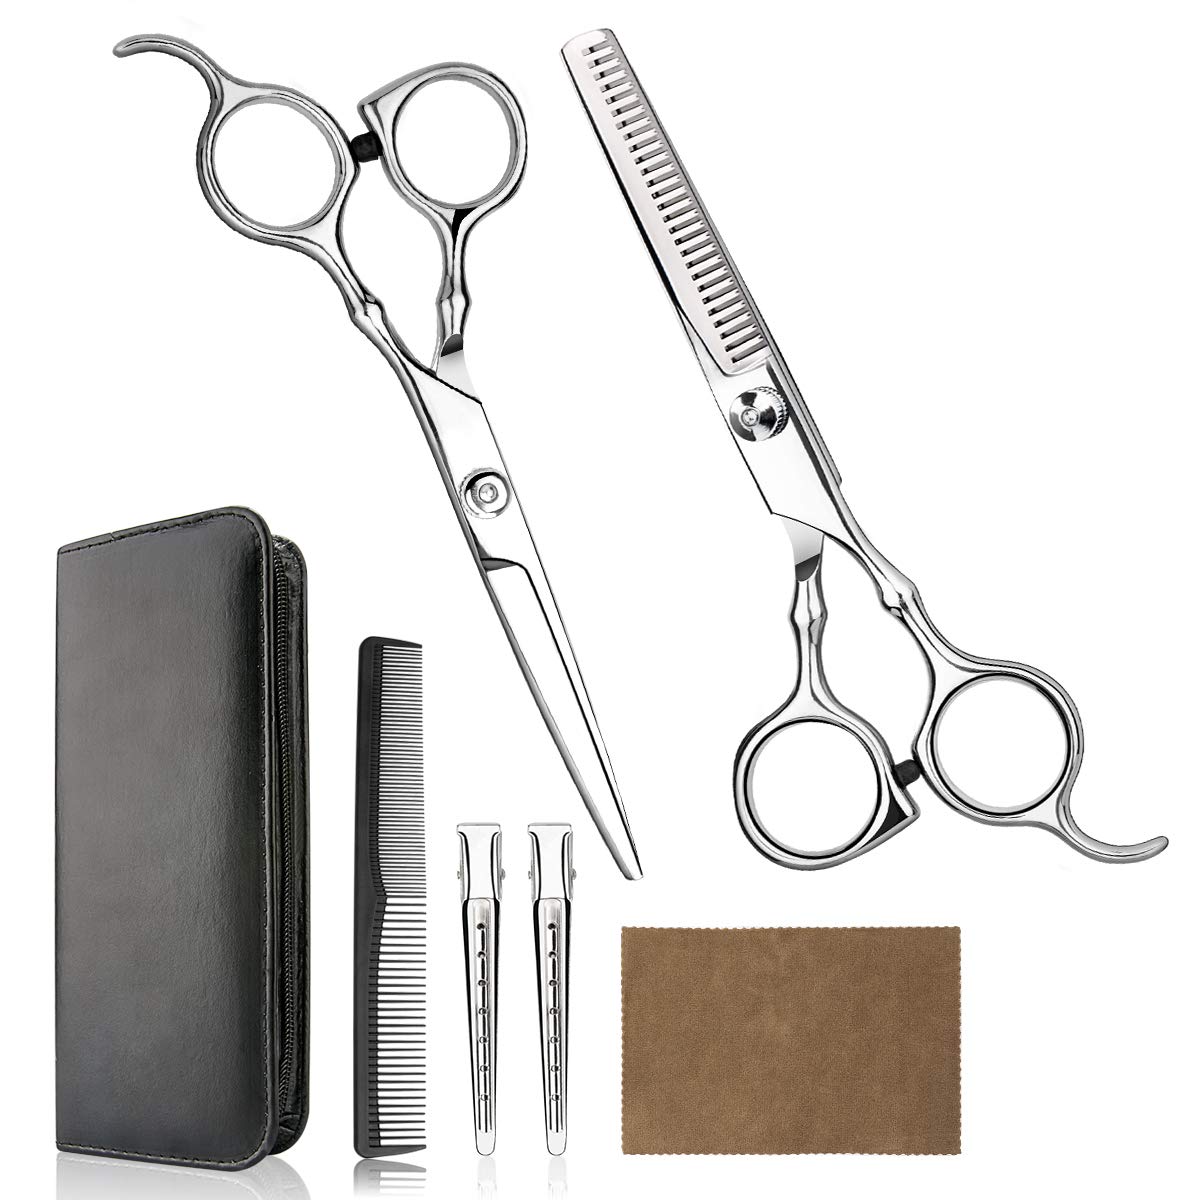 Hair Cutting Scissors Professional Home Haircutting [...]